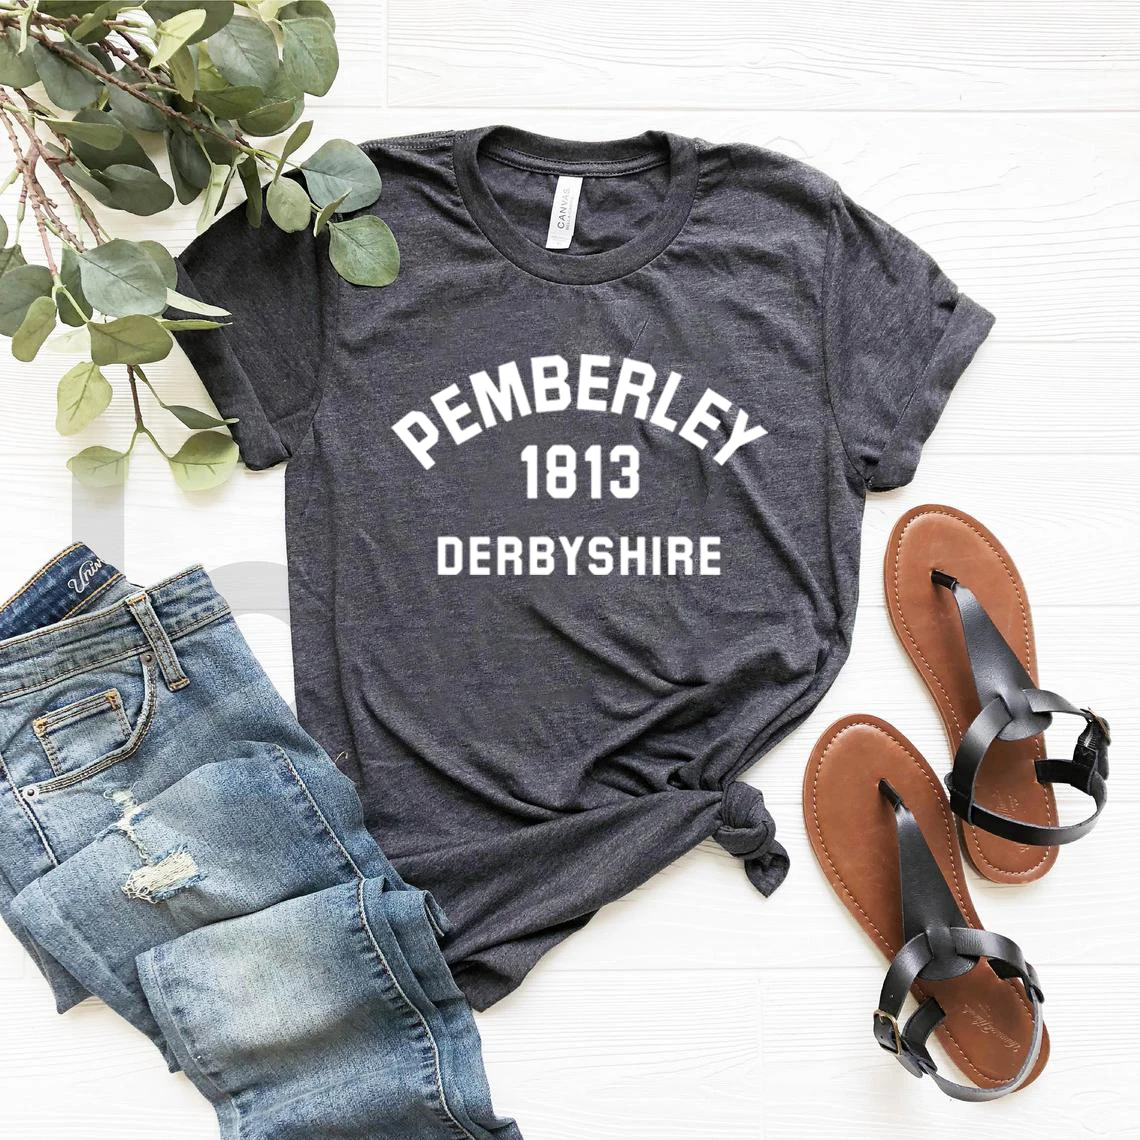 ג 'יין אוסטן חולצה גאווה ודעה קדומה Pemberley חולצה Pemberley 1813 דרבישייר ספר מאהב Tees בציר אסתטי חולצות